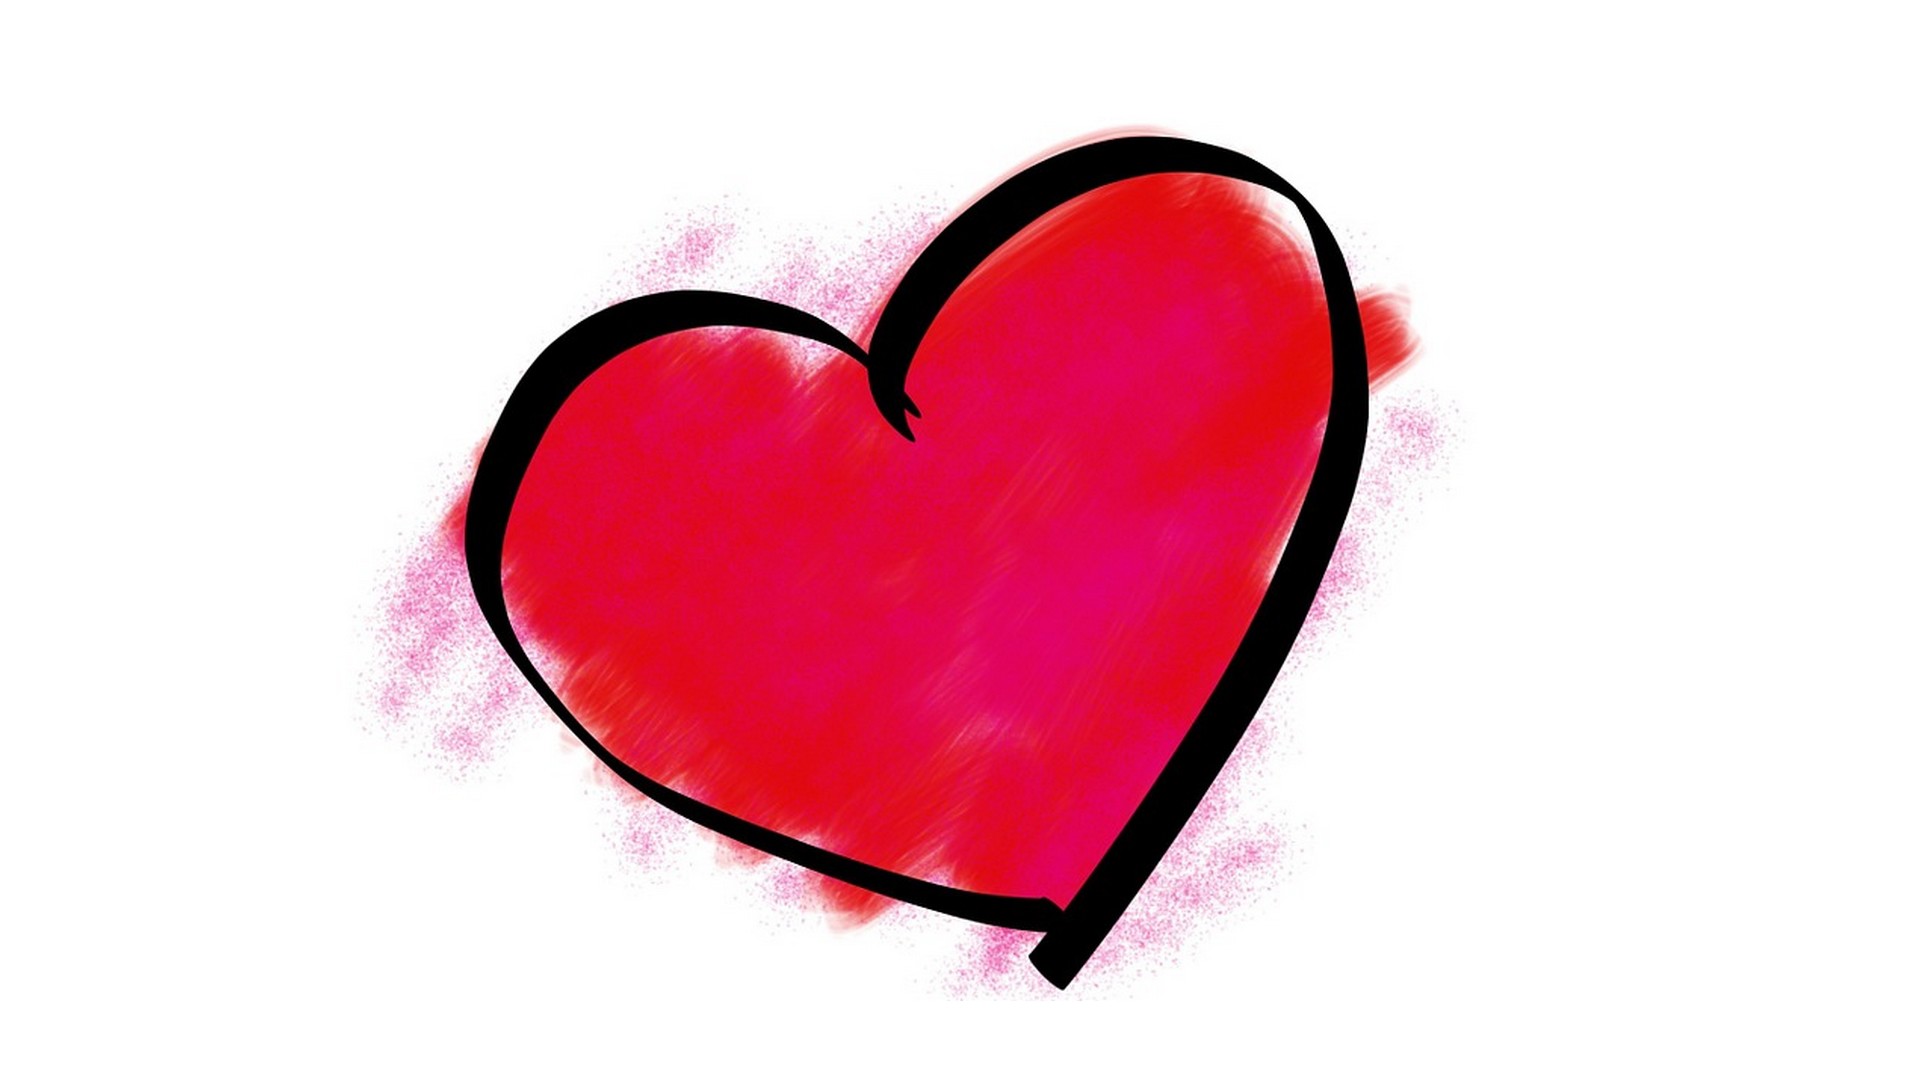 Le coeur symbole de l'amour (domaine public)